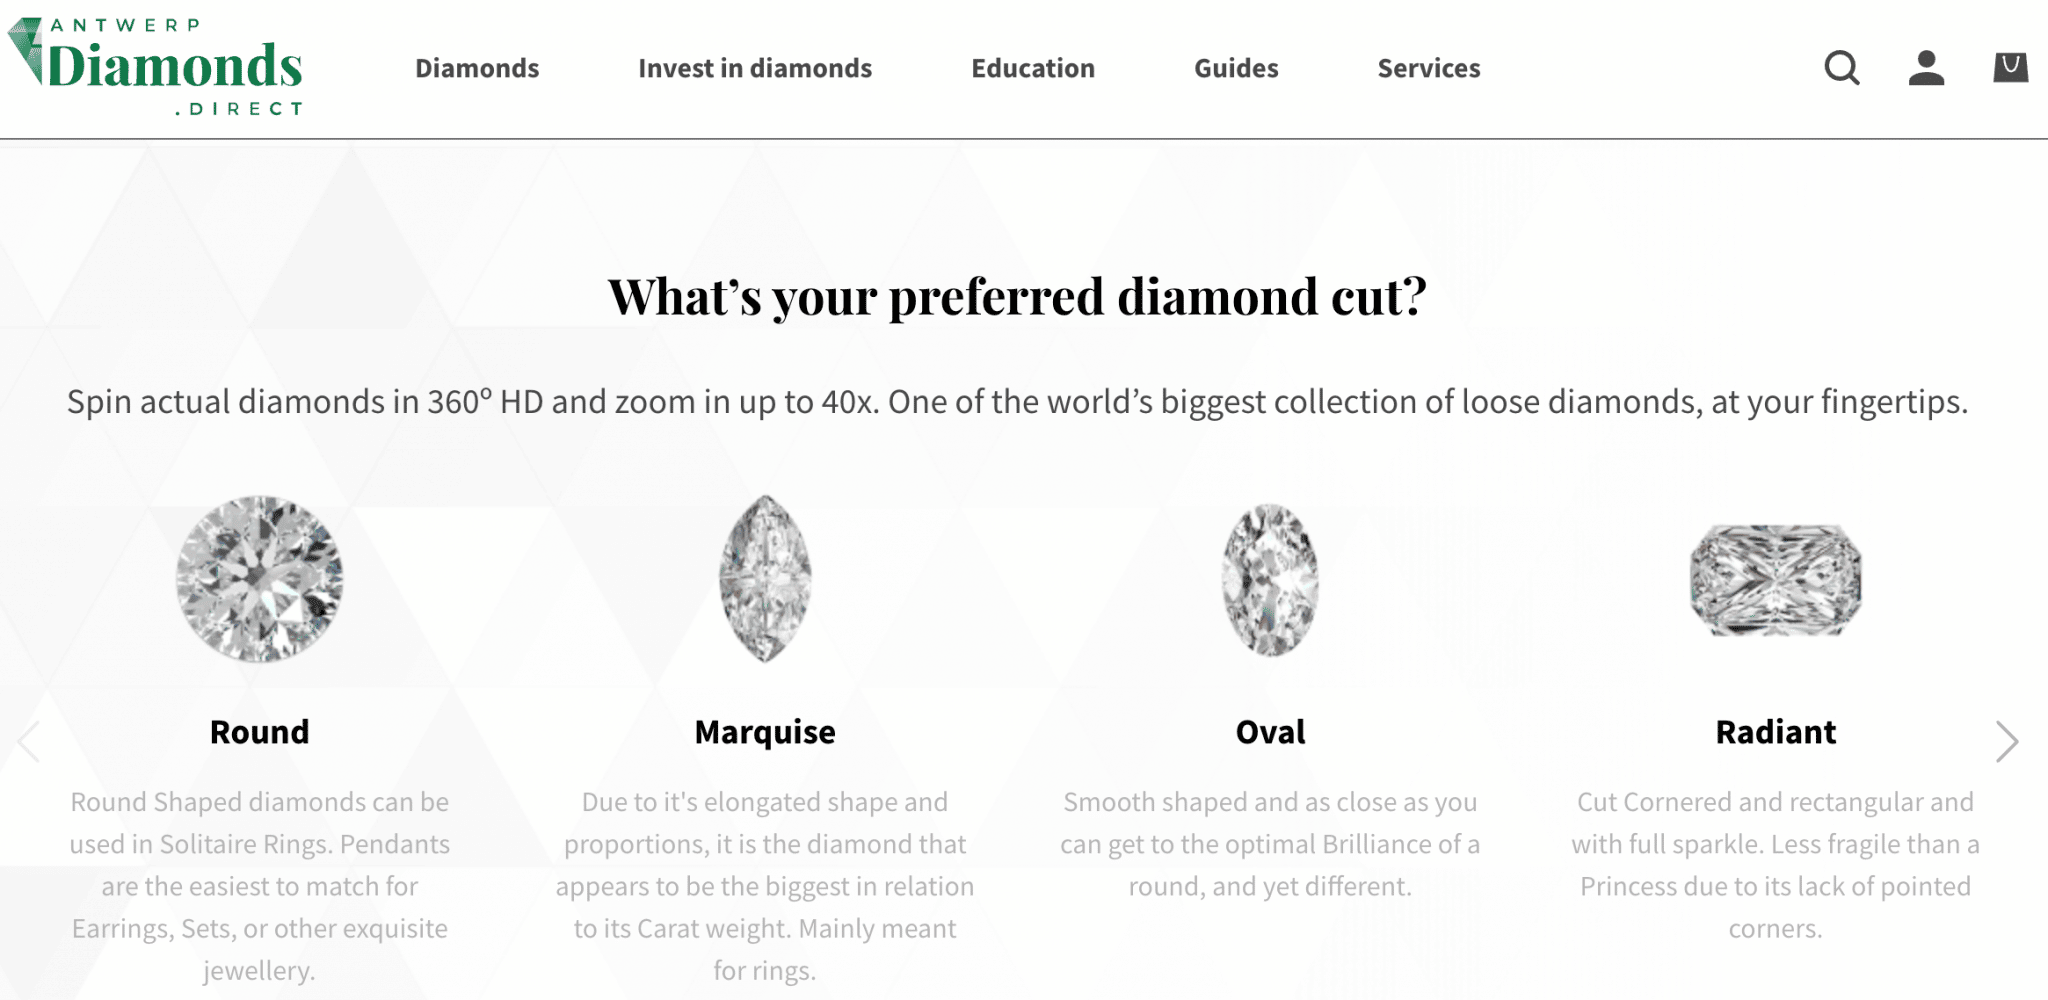 Un investimento in diamanti nel lungo periodo può iniziare in questo sito che offre una grande selezione di diamanti certificati